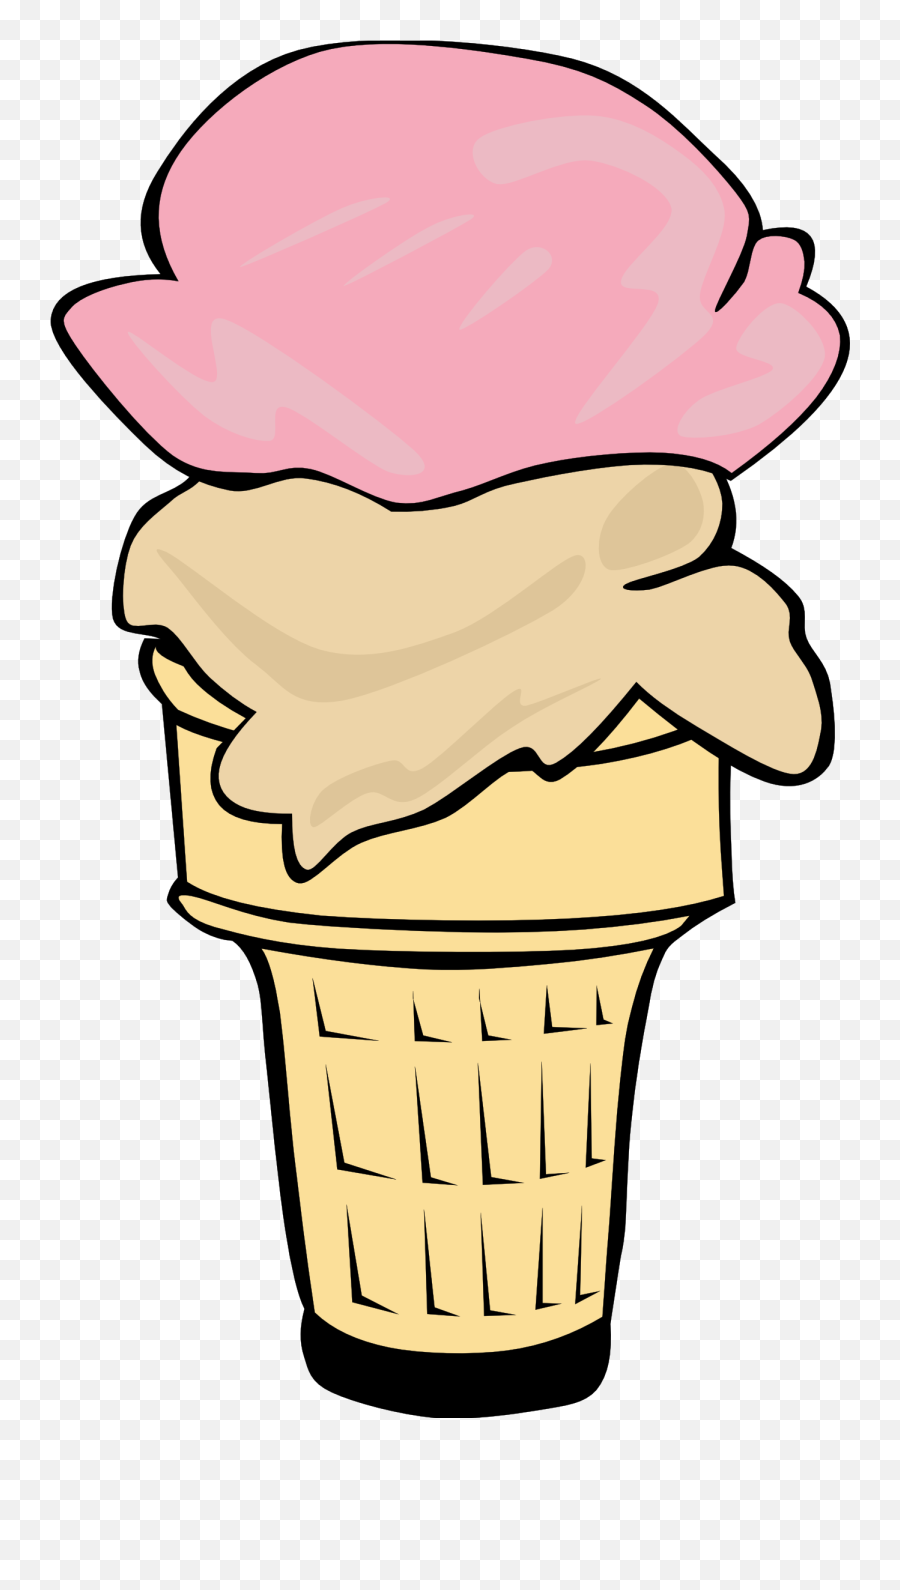 Ice Cream Cones Ff Menu 15 Clipart Panda - Free Clipart Images 1 Ice Cream Cone Clipart Emoji,Menu Clipart